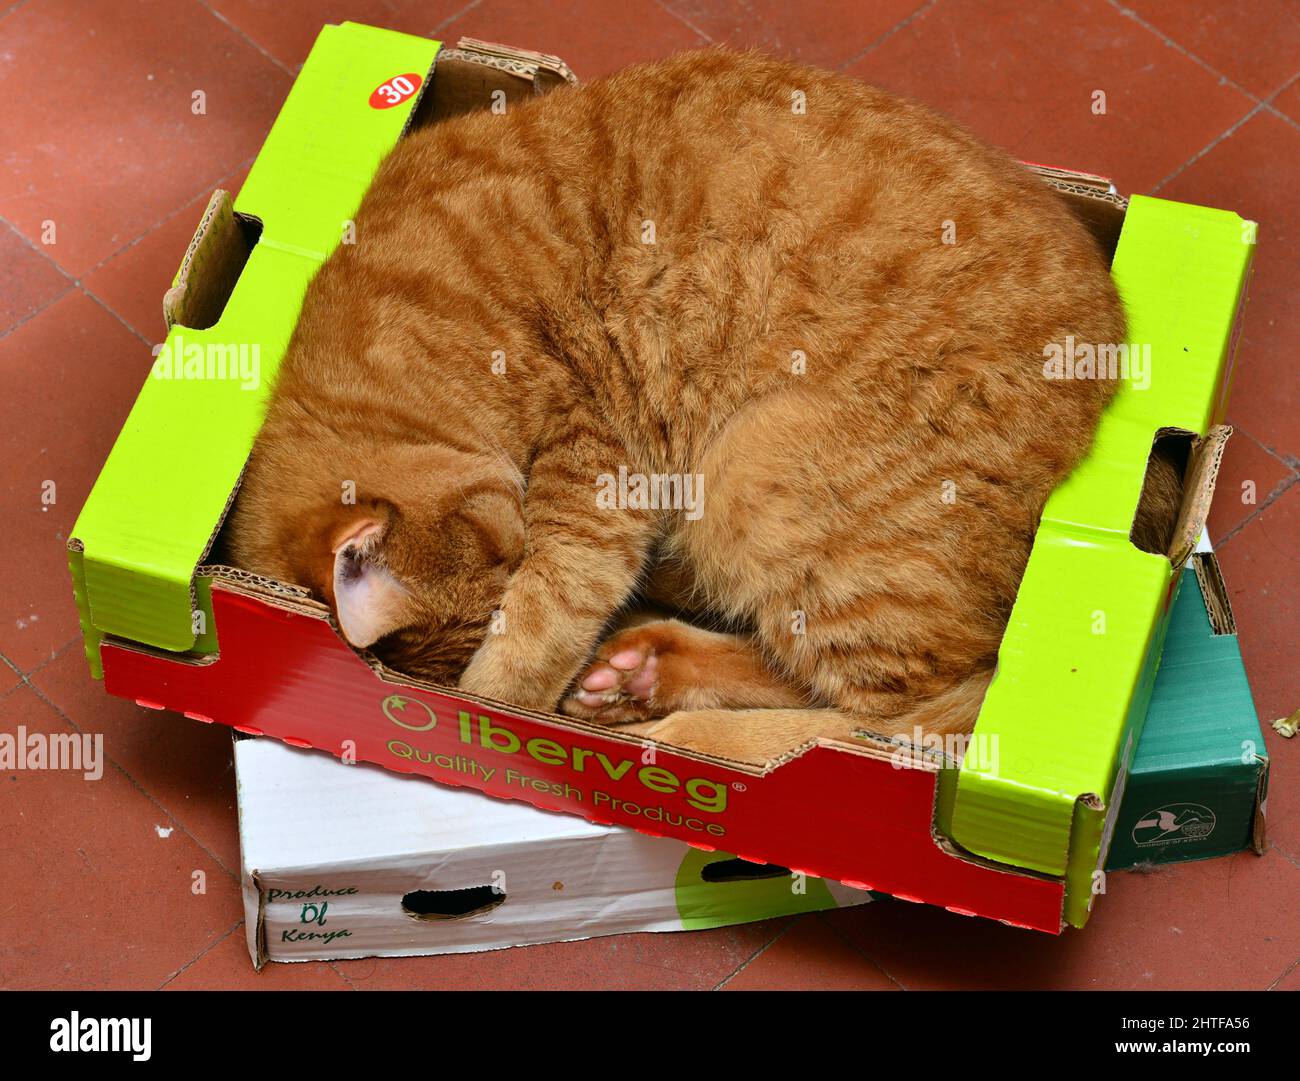 Un chat de gingembre dort dans une boîte de légumes dans une cuisine de campagne. Banque D'Images